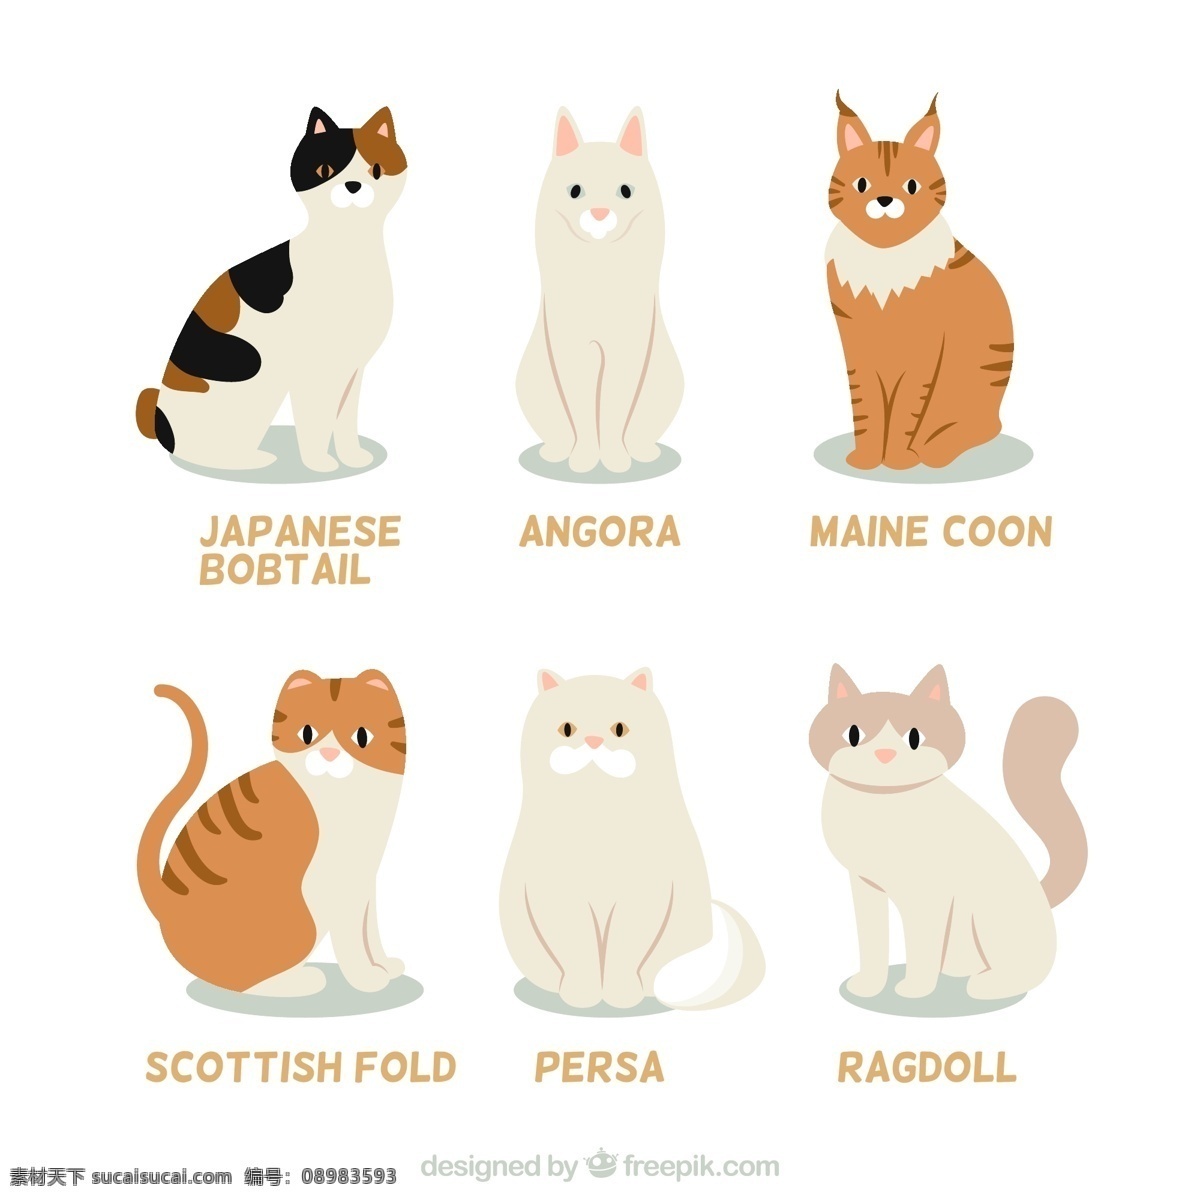 款 可爱 猫咪 矢量 矢量素材 猫 装饰画 插画 卡通矢量 教材 猫咪种类